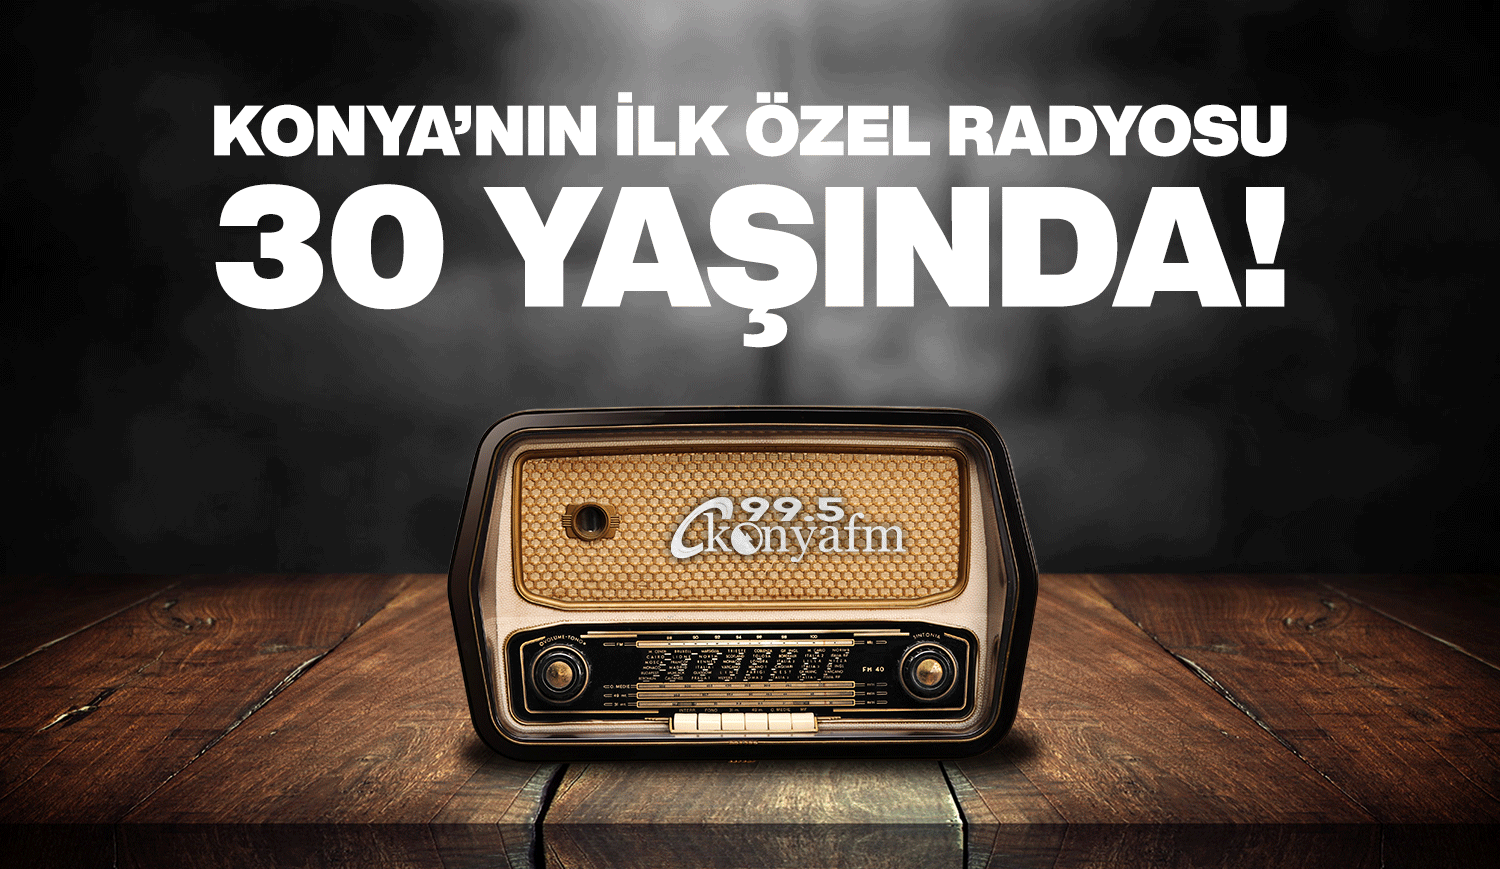 Konya’nın ilk özel radyosu konyafm 30 yaşında